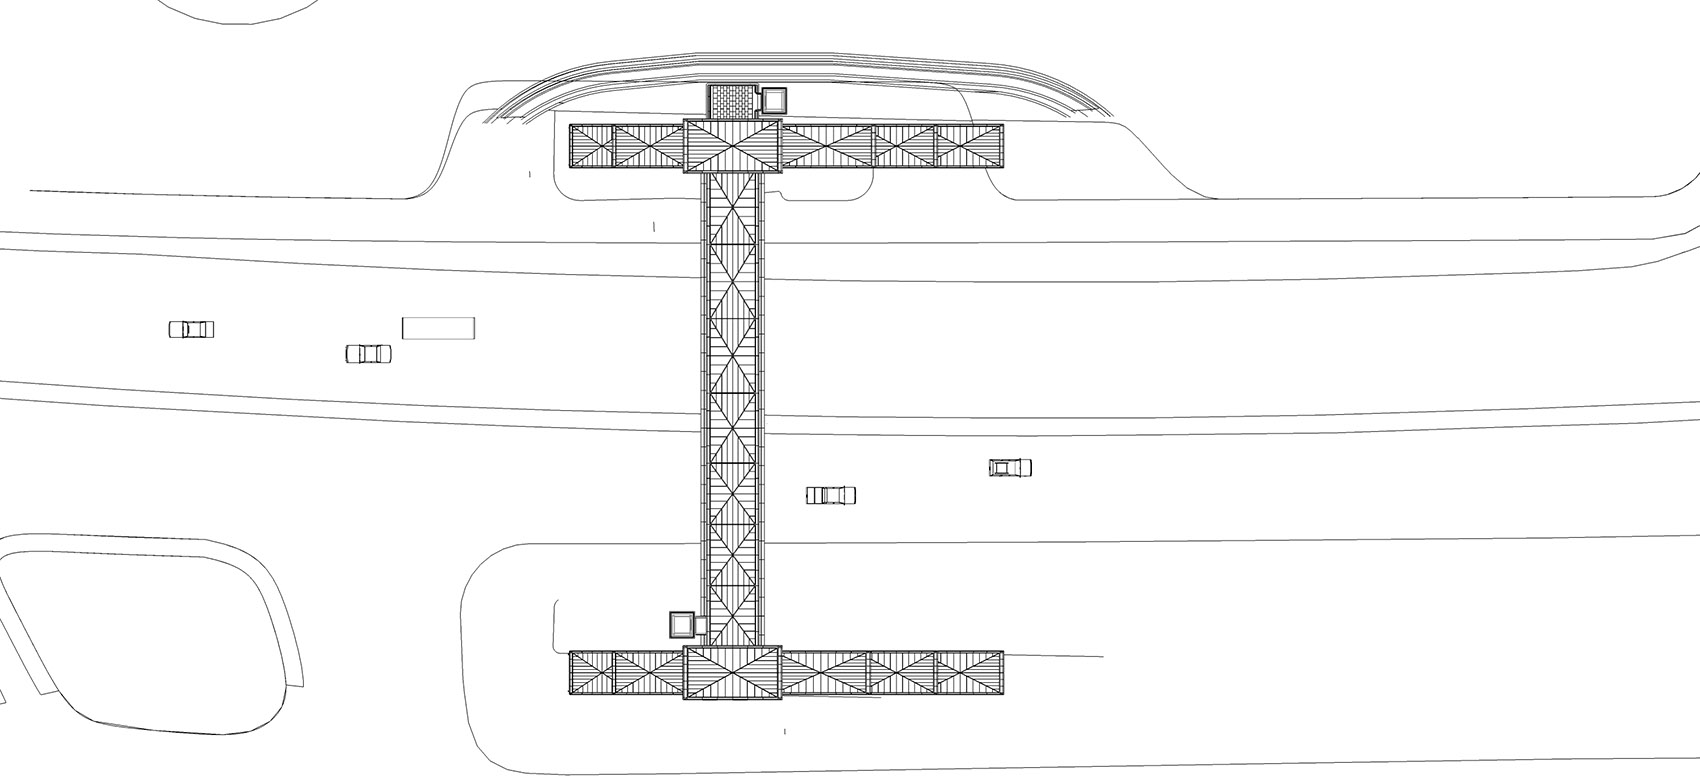 深圳水围天桥/利用想象和创意赋予天桥品质感和仪式感-44